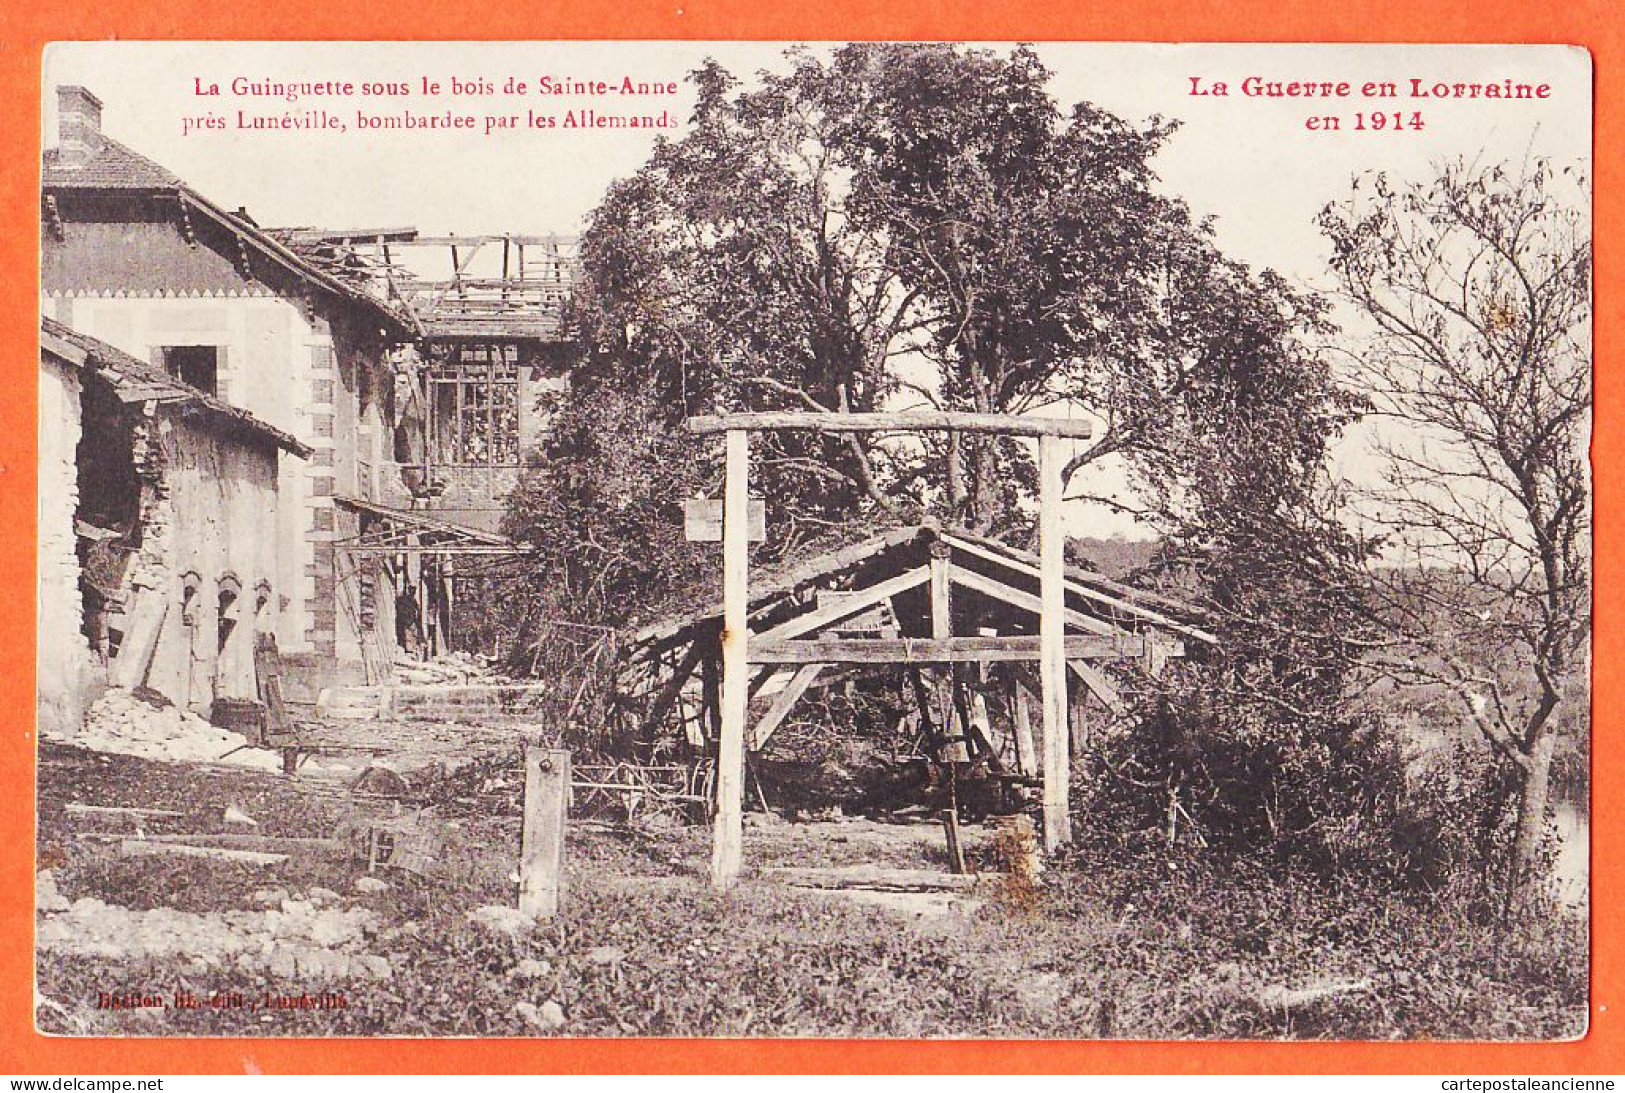 05682 ● Bois De SAINTE-ANNE Près LUNEVILLE (54) La GUINGUETTE Bombardée Par Allemands Guerre LORRAINE En 1914 - BASTIEN - Luneville